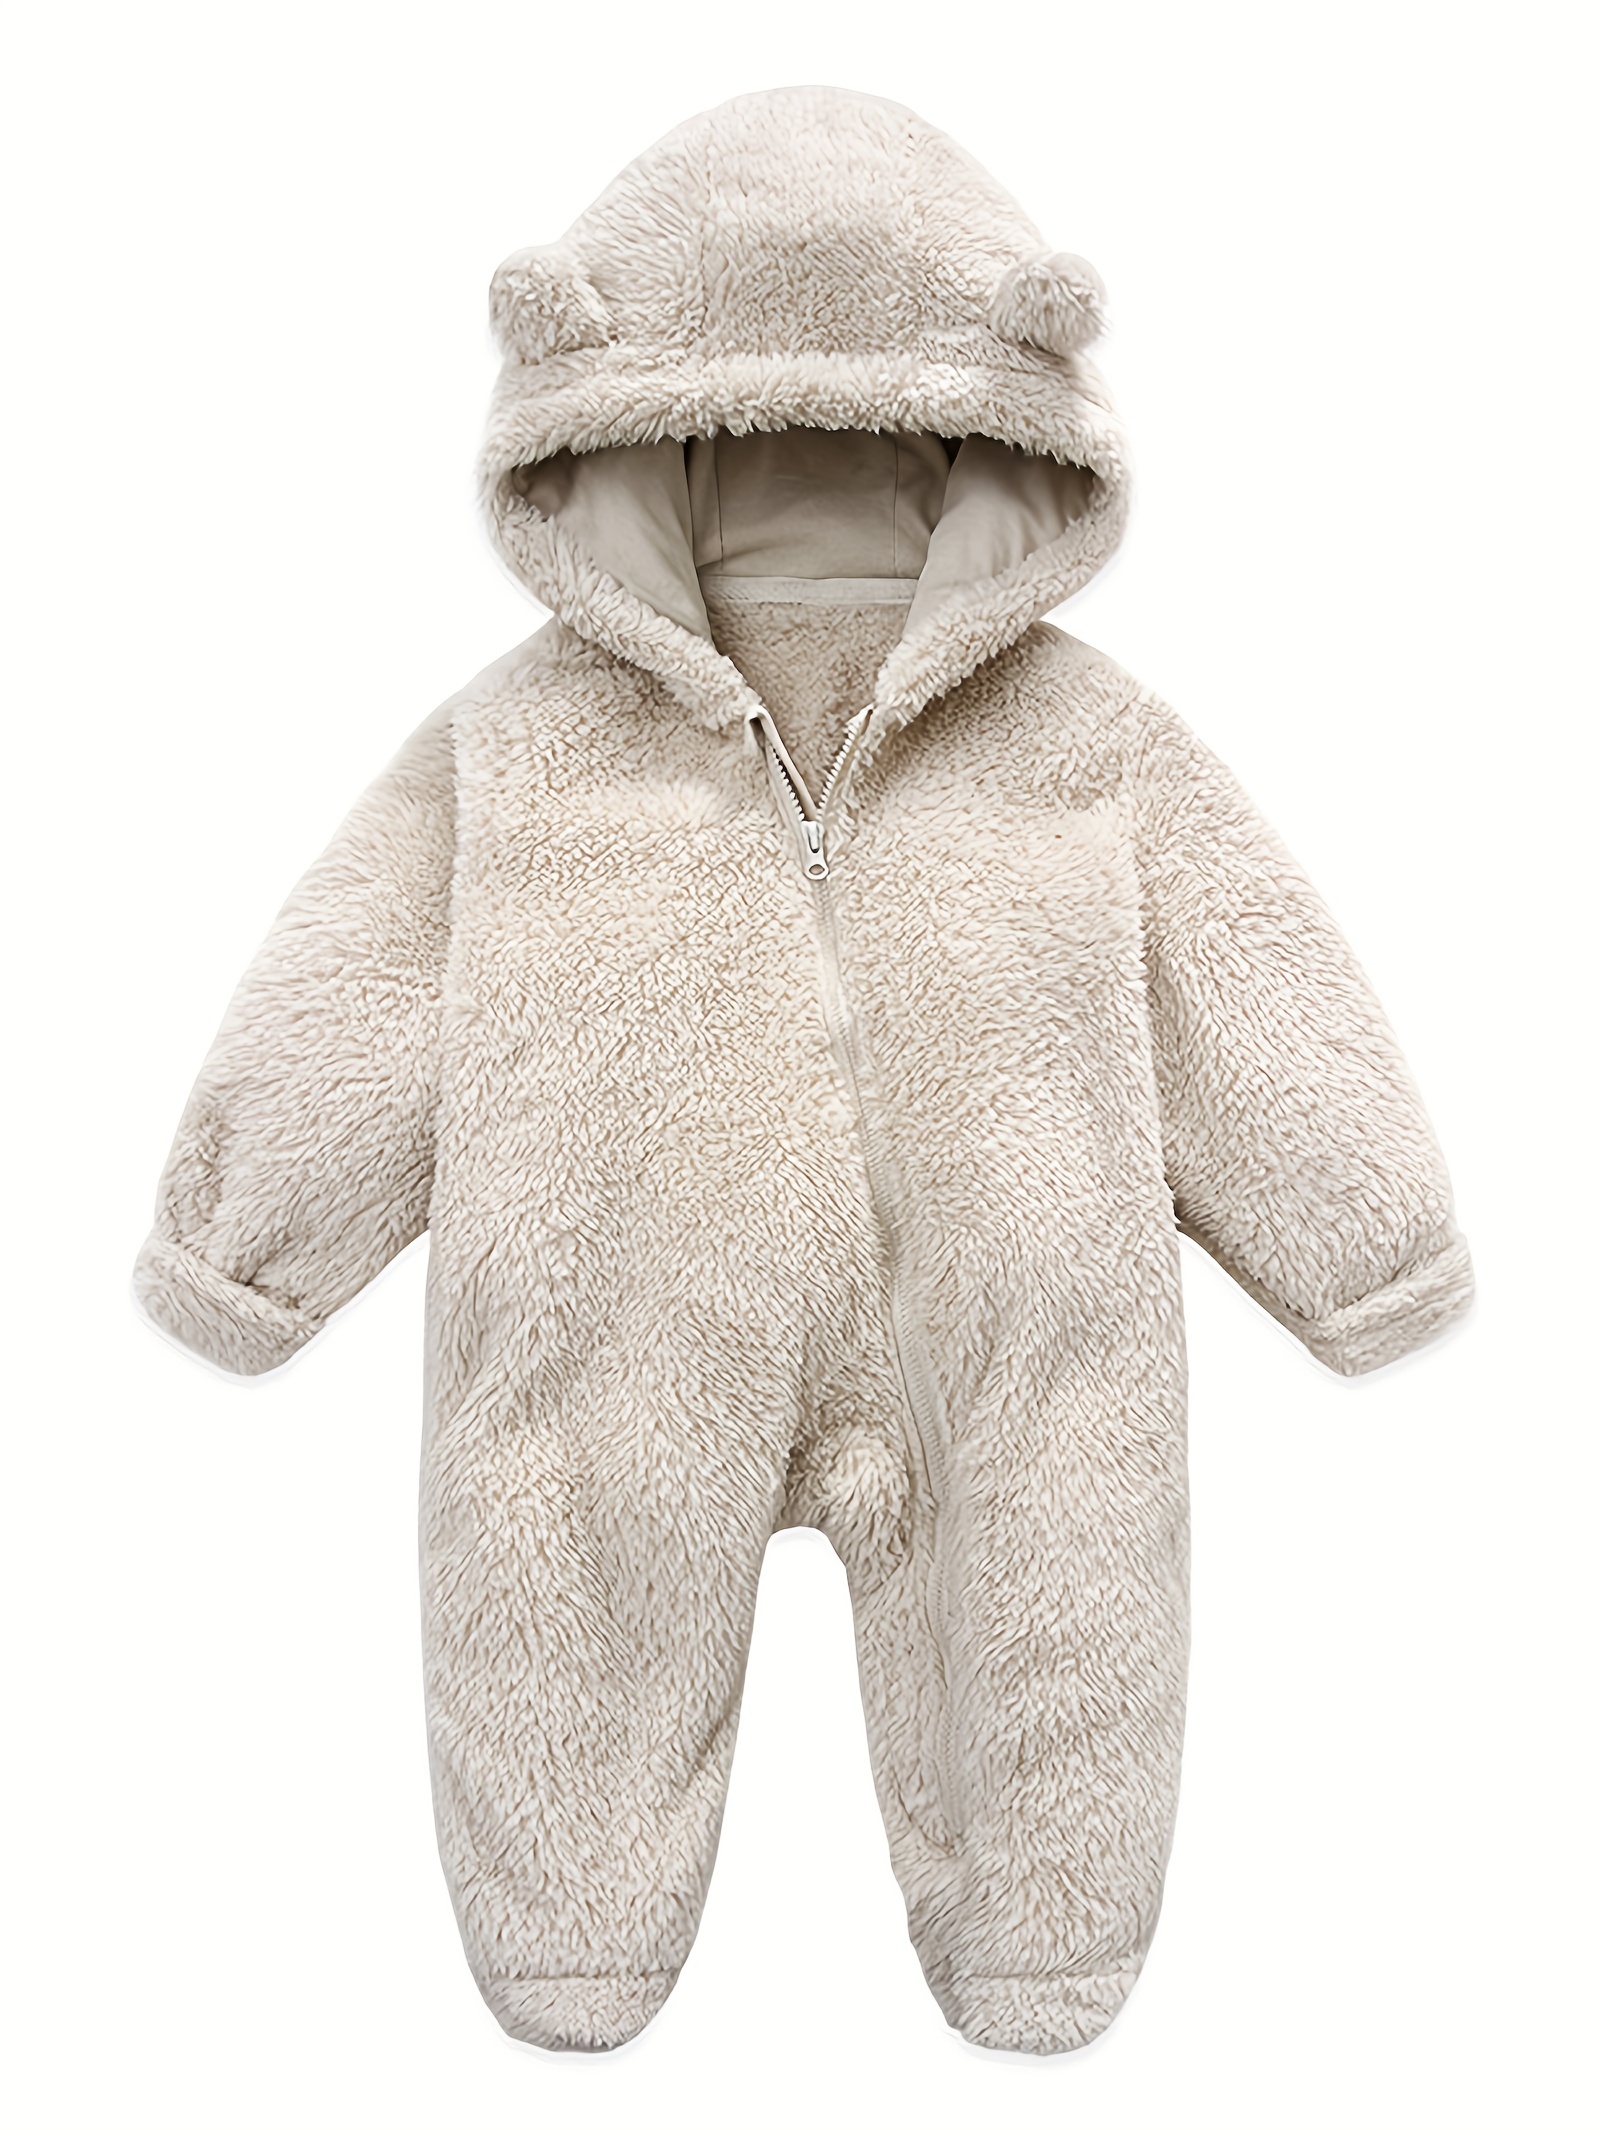 Barboteuse à Capuche Pour bébé Combinaison de Neige Polaire Hiver Pyjama à  Manches Longues Combinaison Barboteuse Bébé Fille Garçons